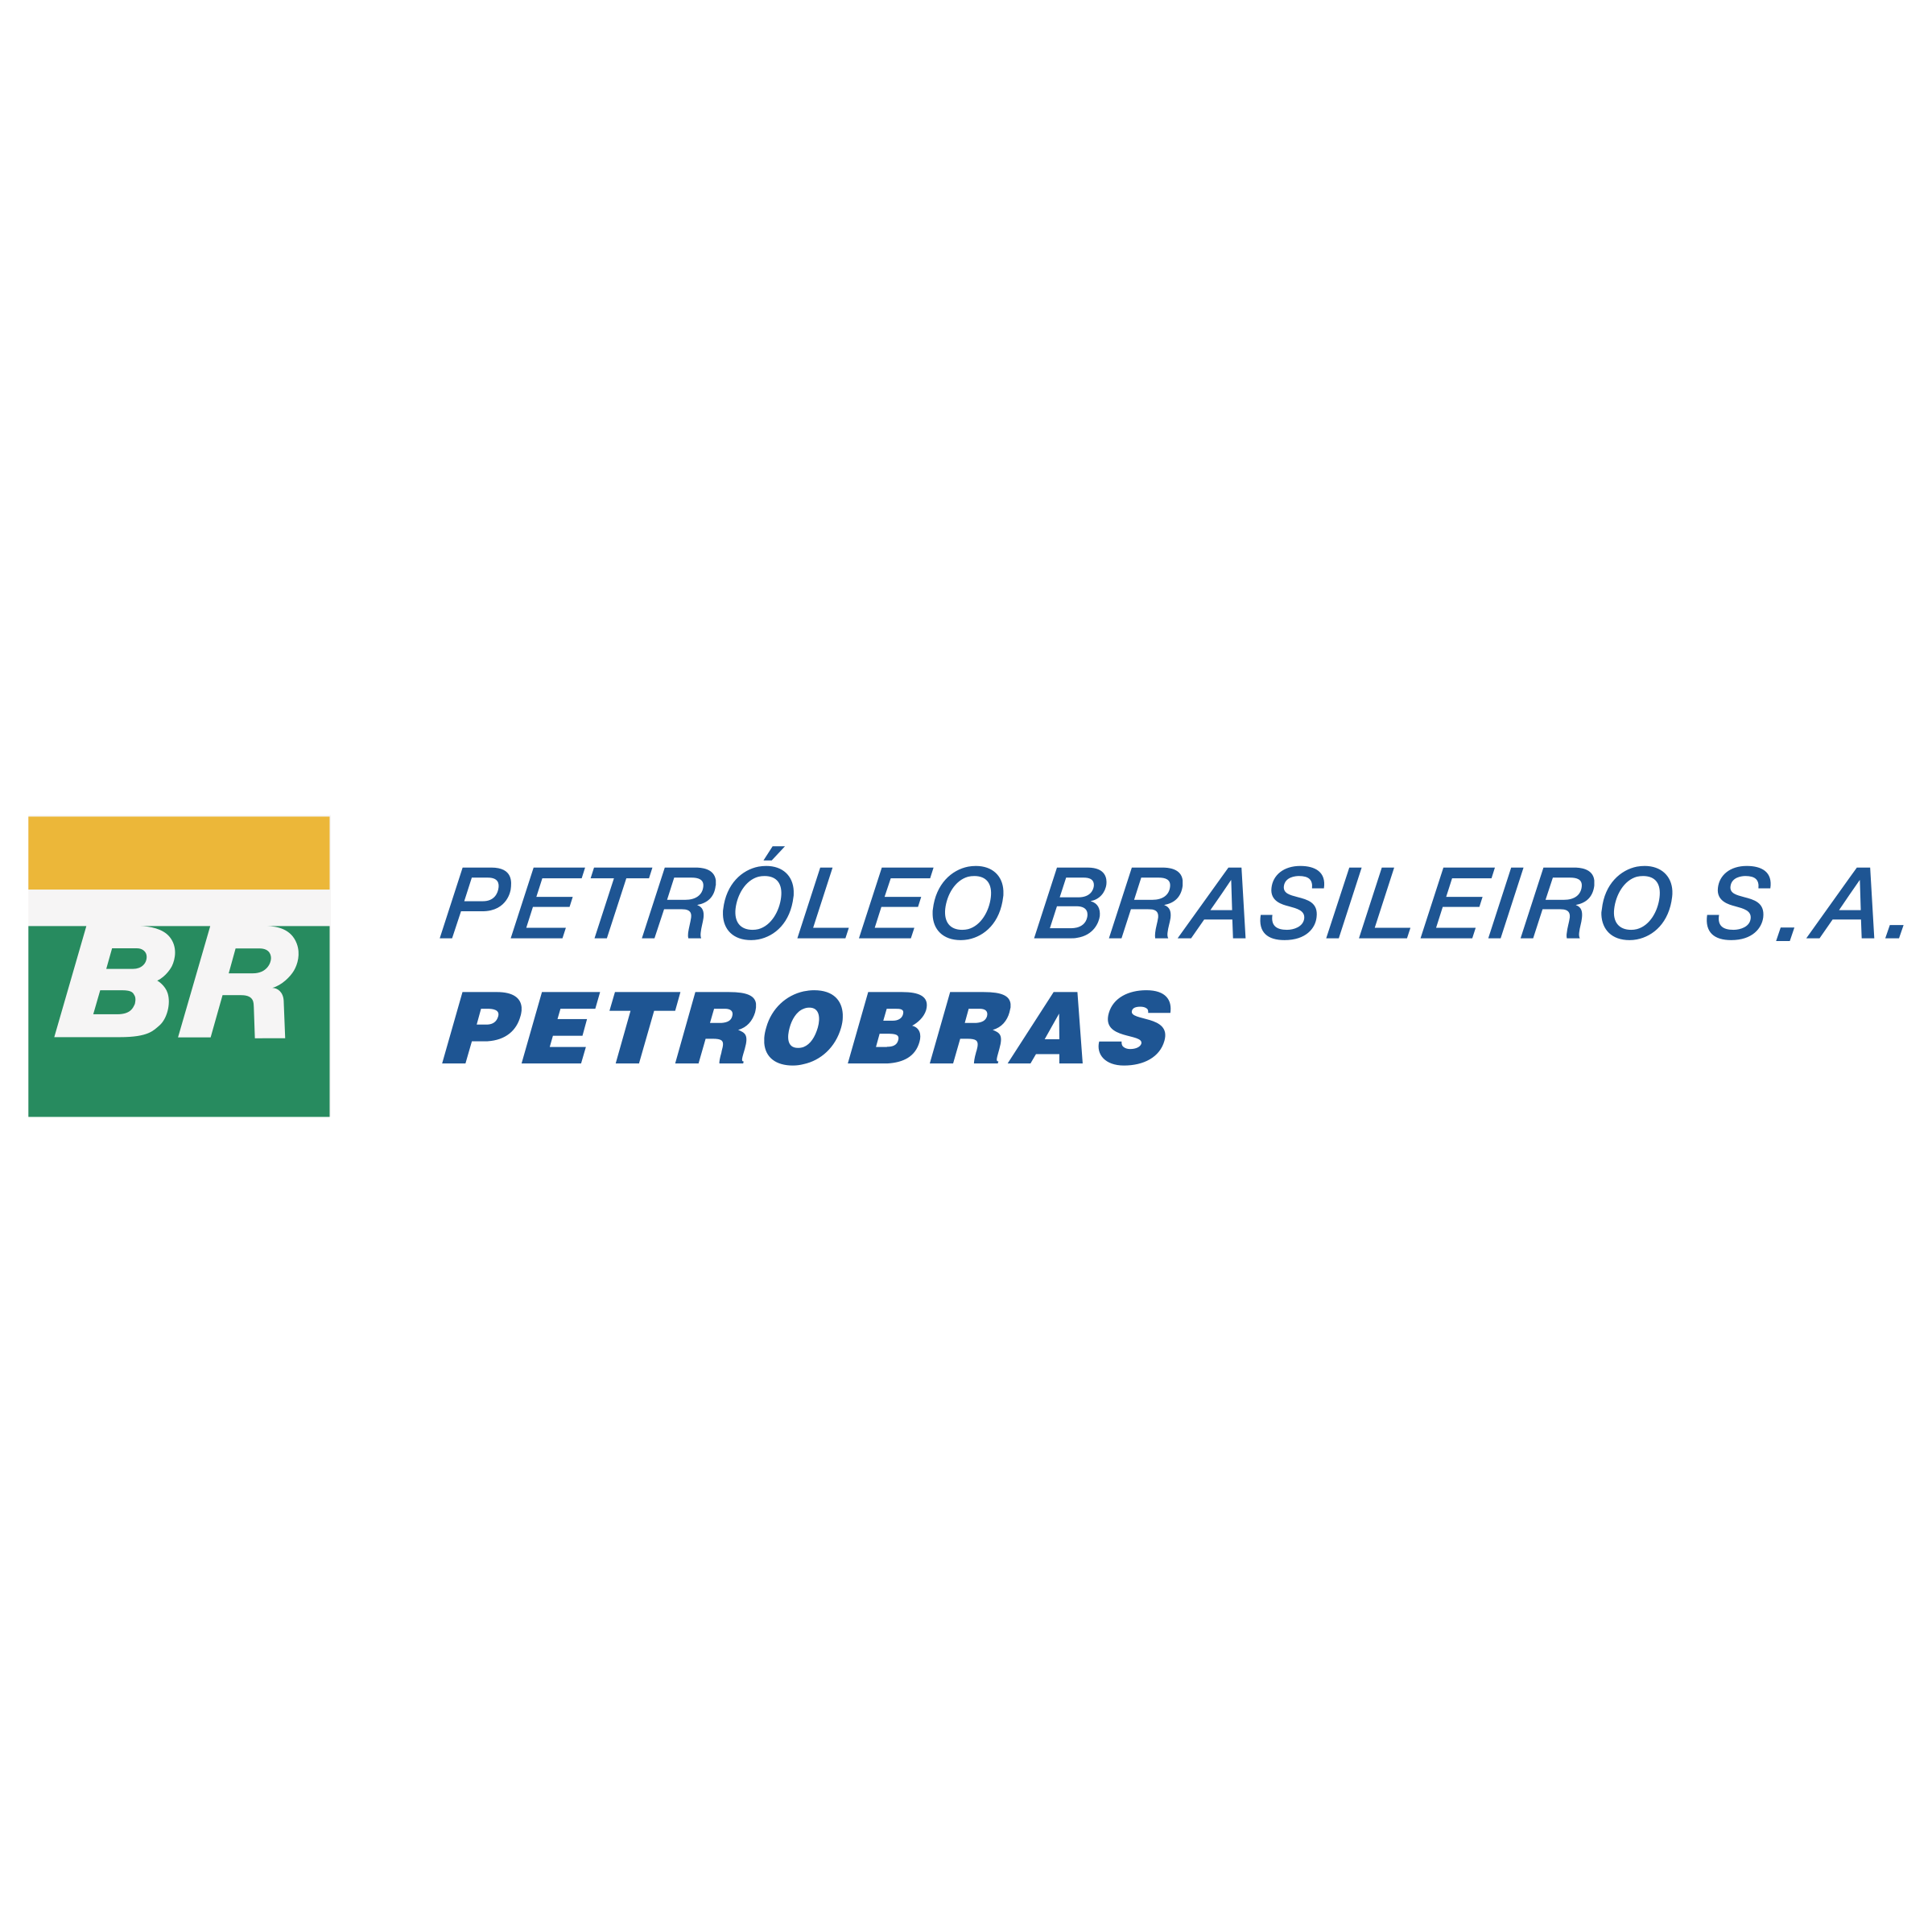 Petrobras Logo Background PNG Image